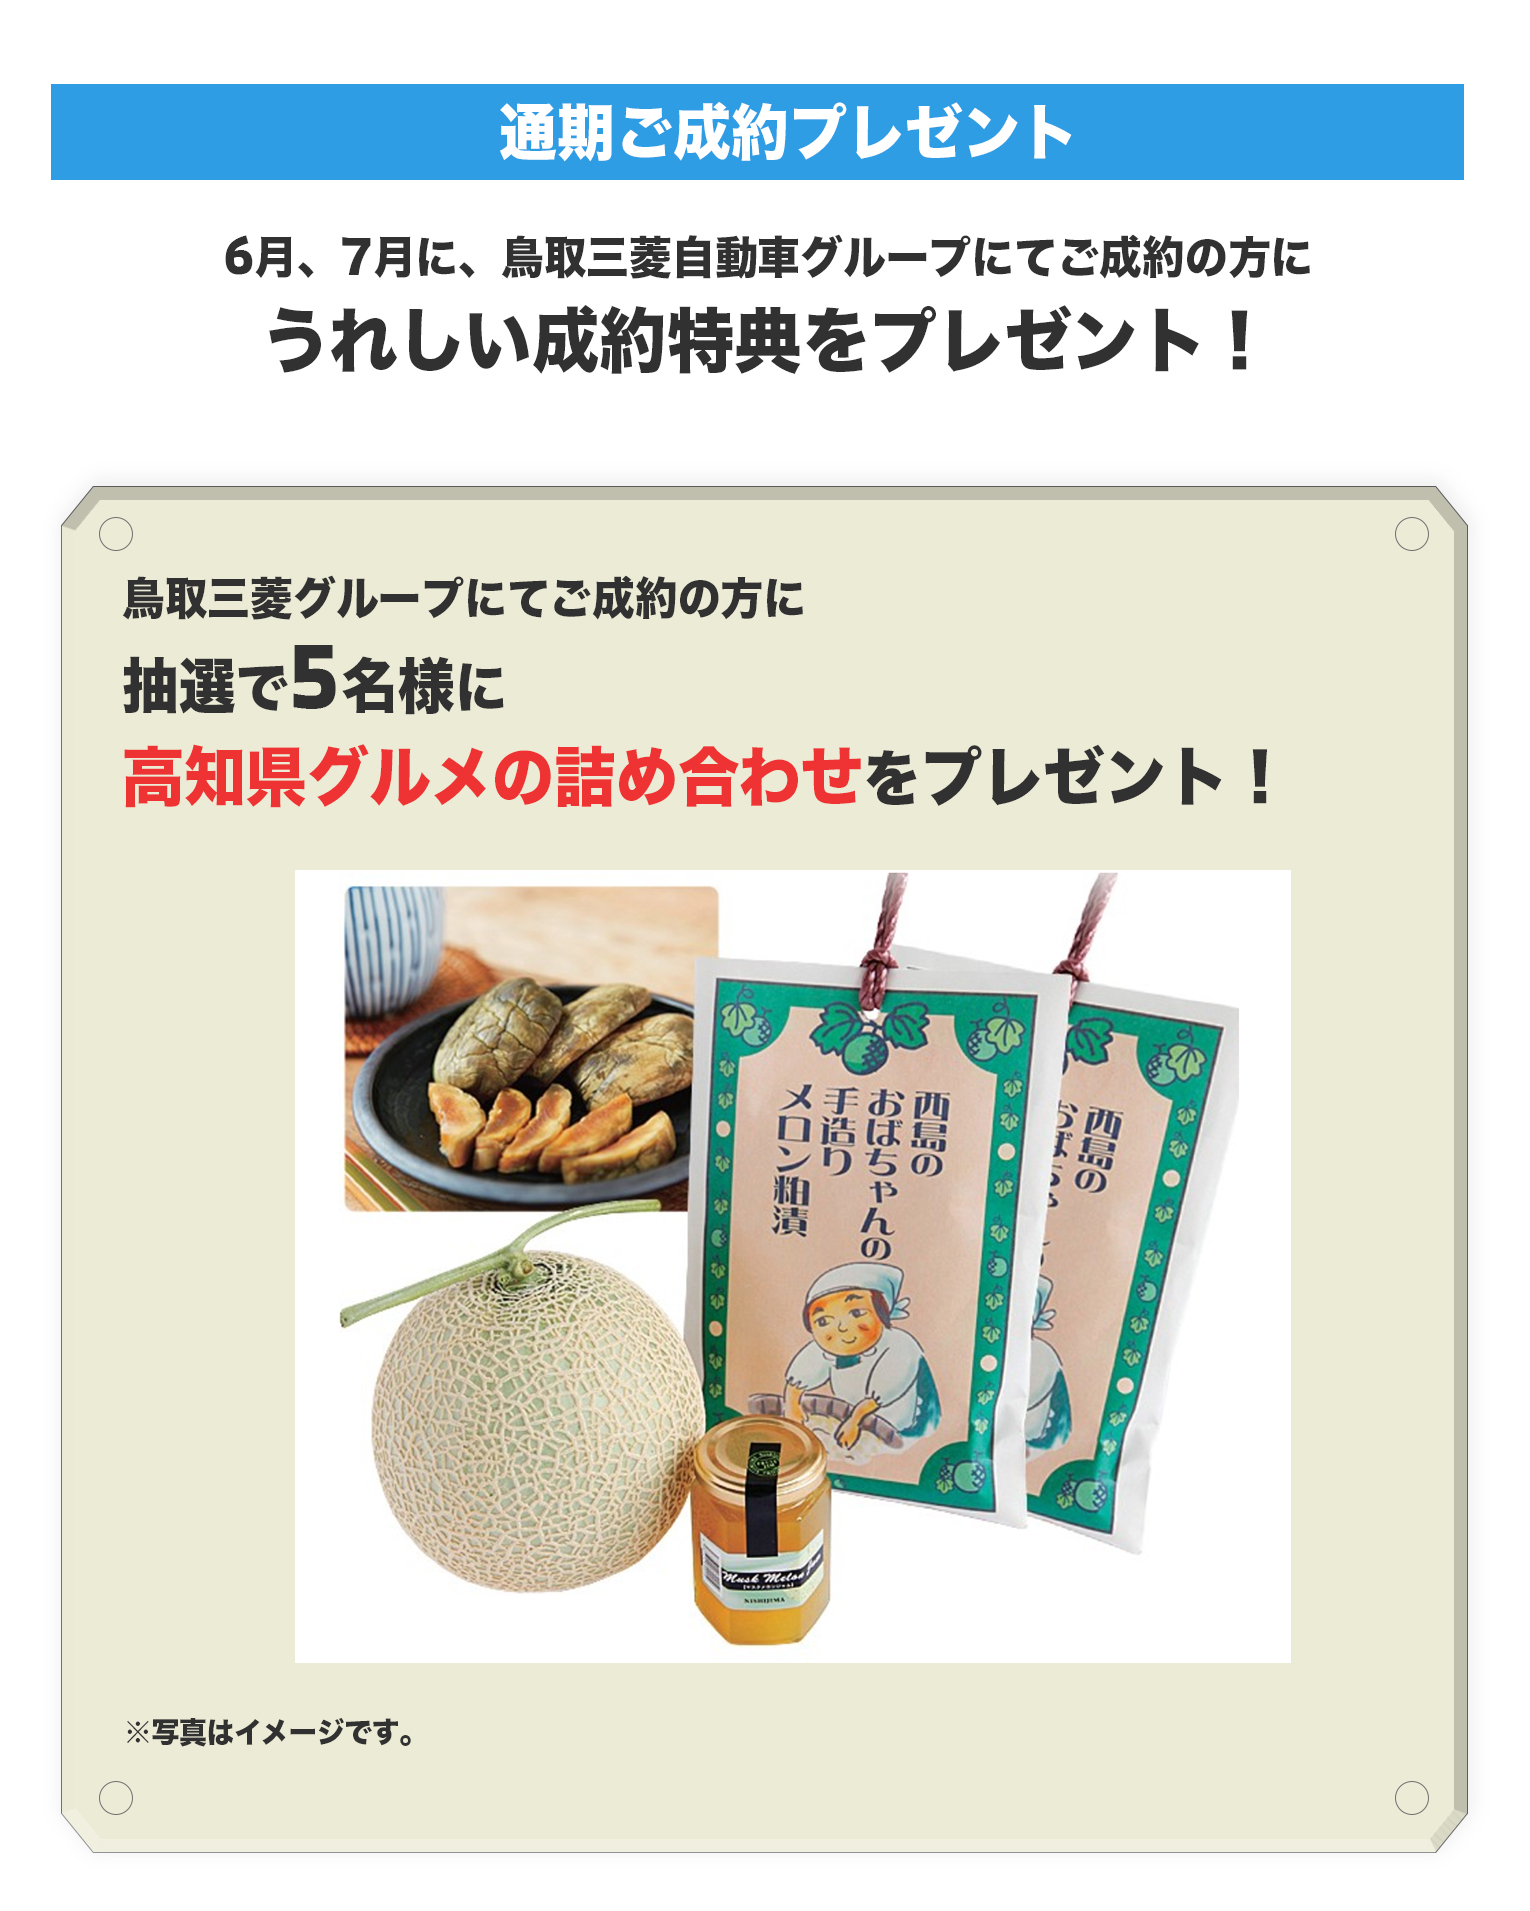 鳥取三菱グループにてご成約の方に抽選で5名様に高知県グルメの詰め合わせをプレゼント！